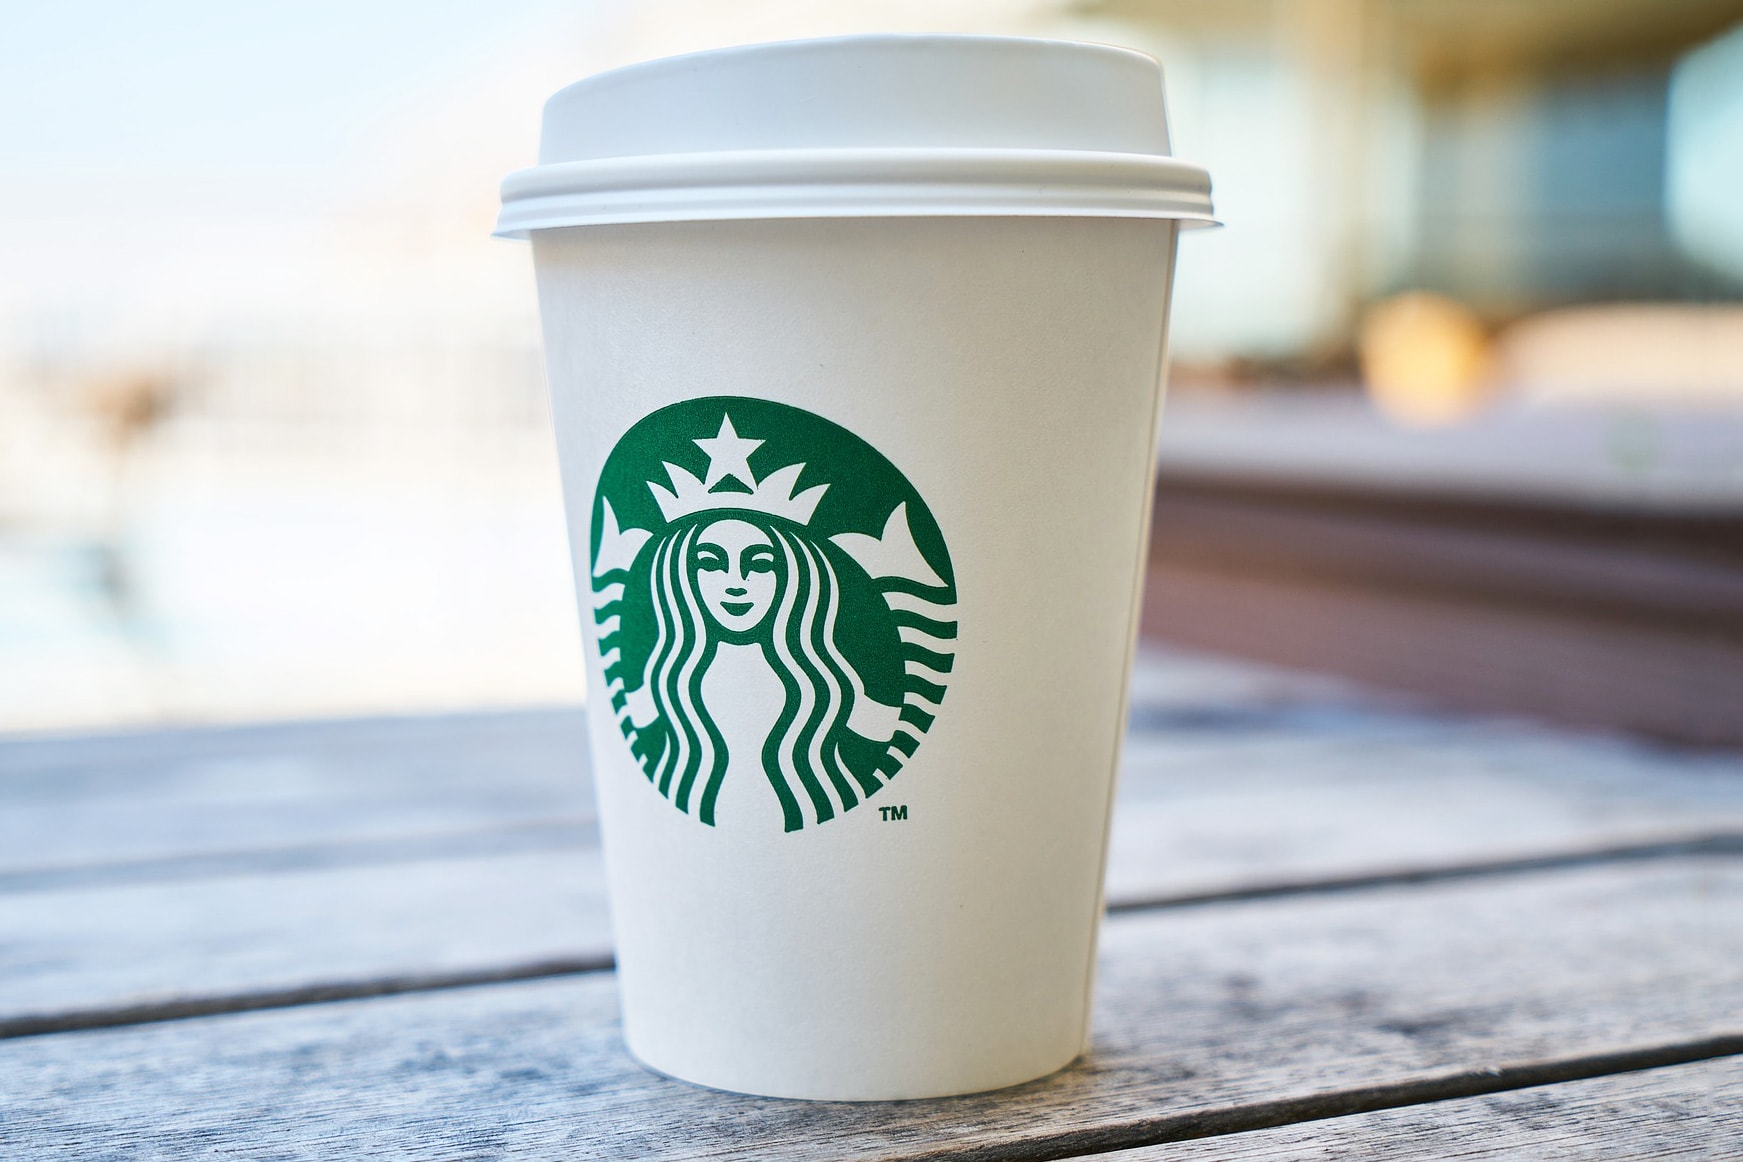 Starbucks Cup NextGen Cup Challenge Closed Loop Partners